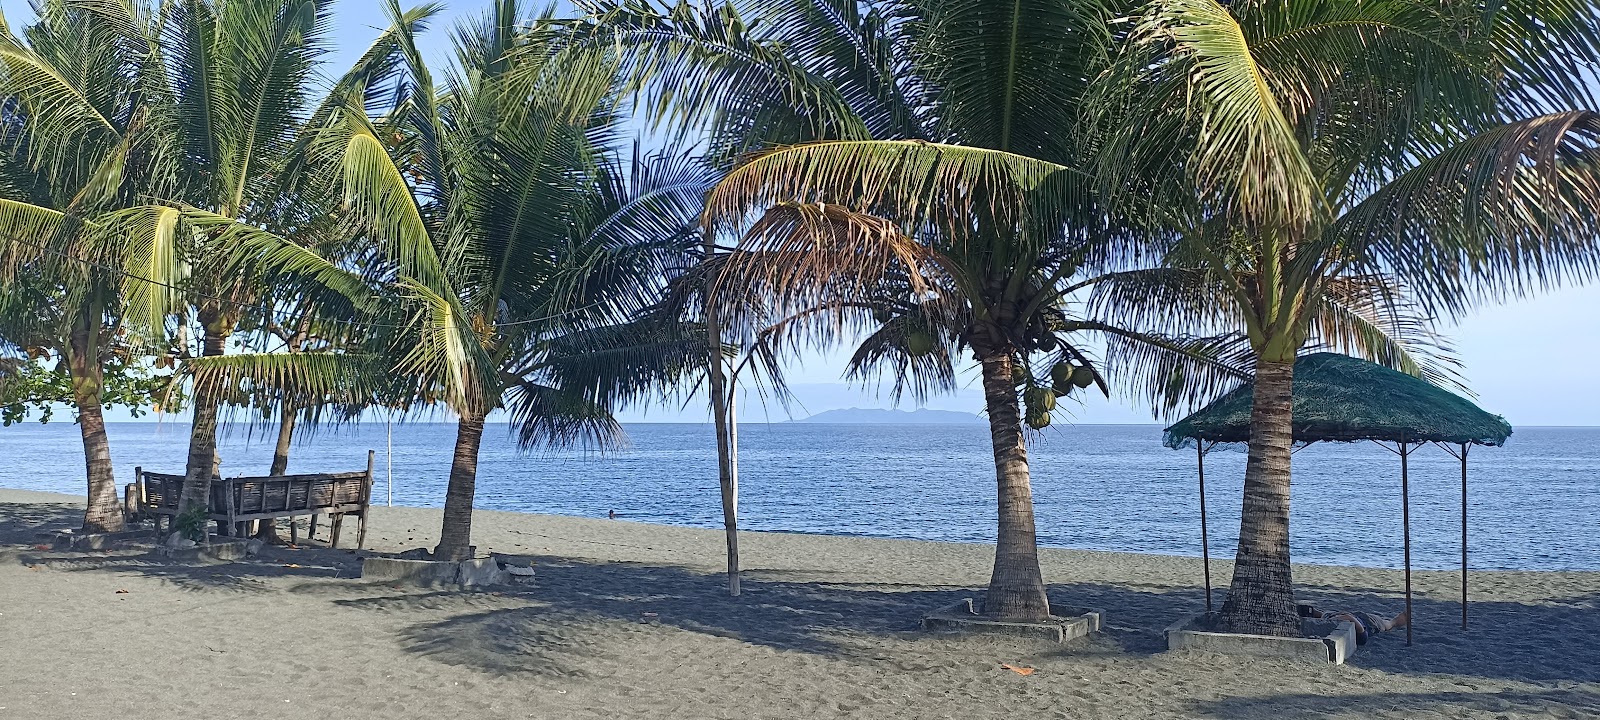 Foto de Pinamalayan Beach - lugar popular entre los conocedores del relax